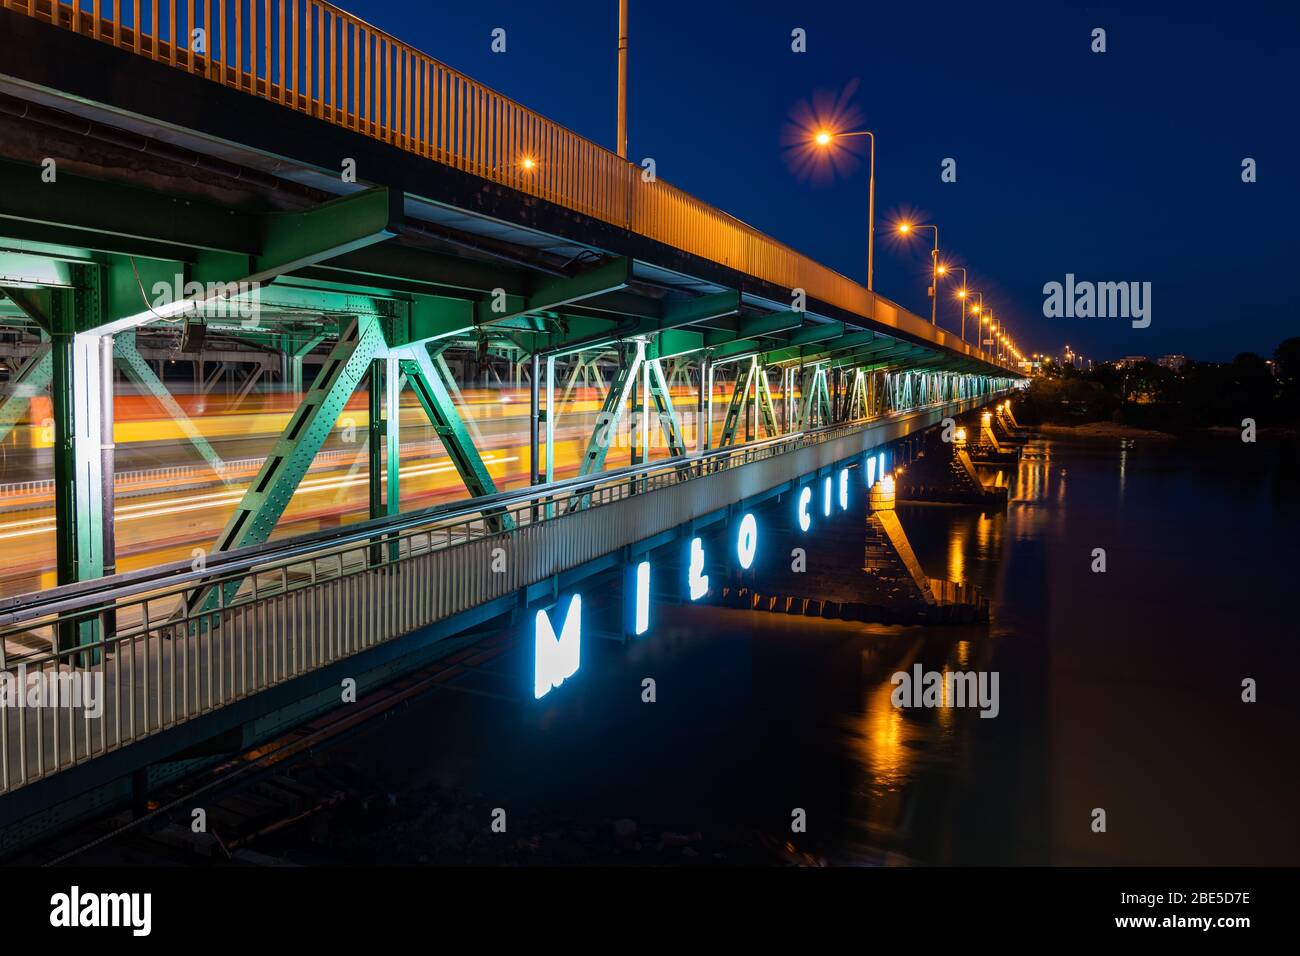 Pont Gdanski sur la Vistule la nuit dans la ville de Varsovie en Pologne, panneau néon en polonais - 'Nice pour vous voir', chemins de lumière de tram sur le niveau inférieur d Banque D'Images